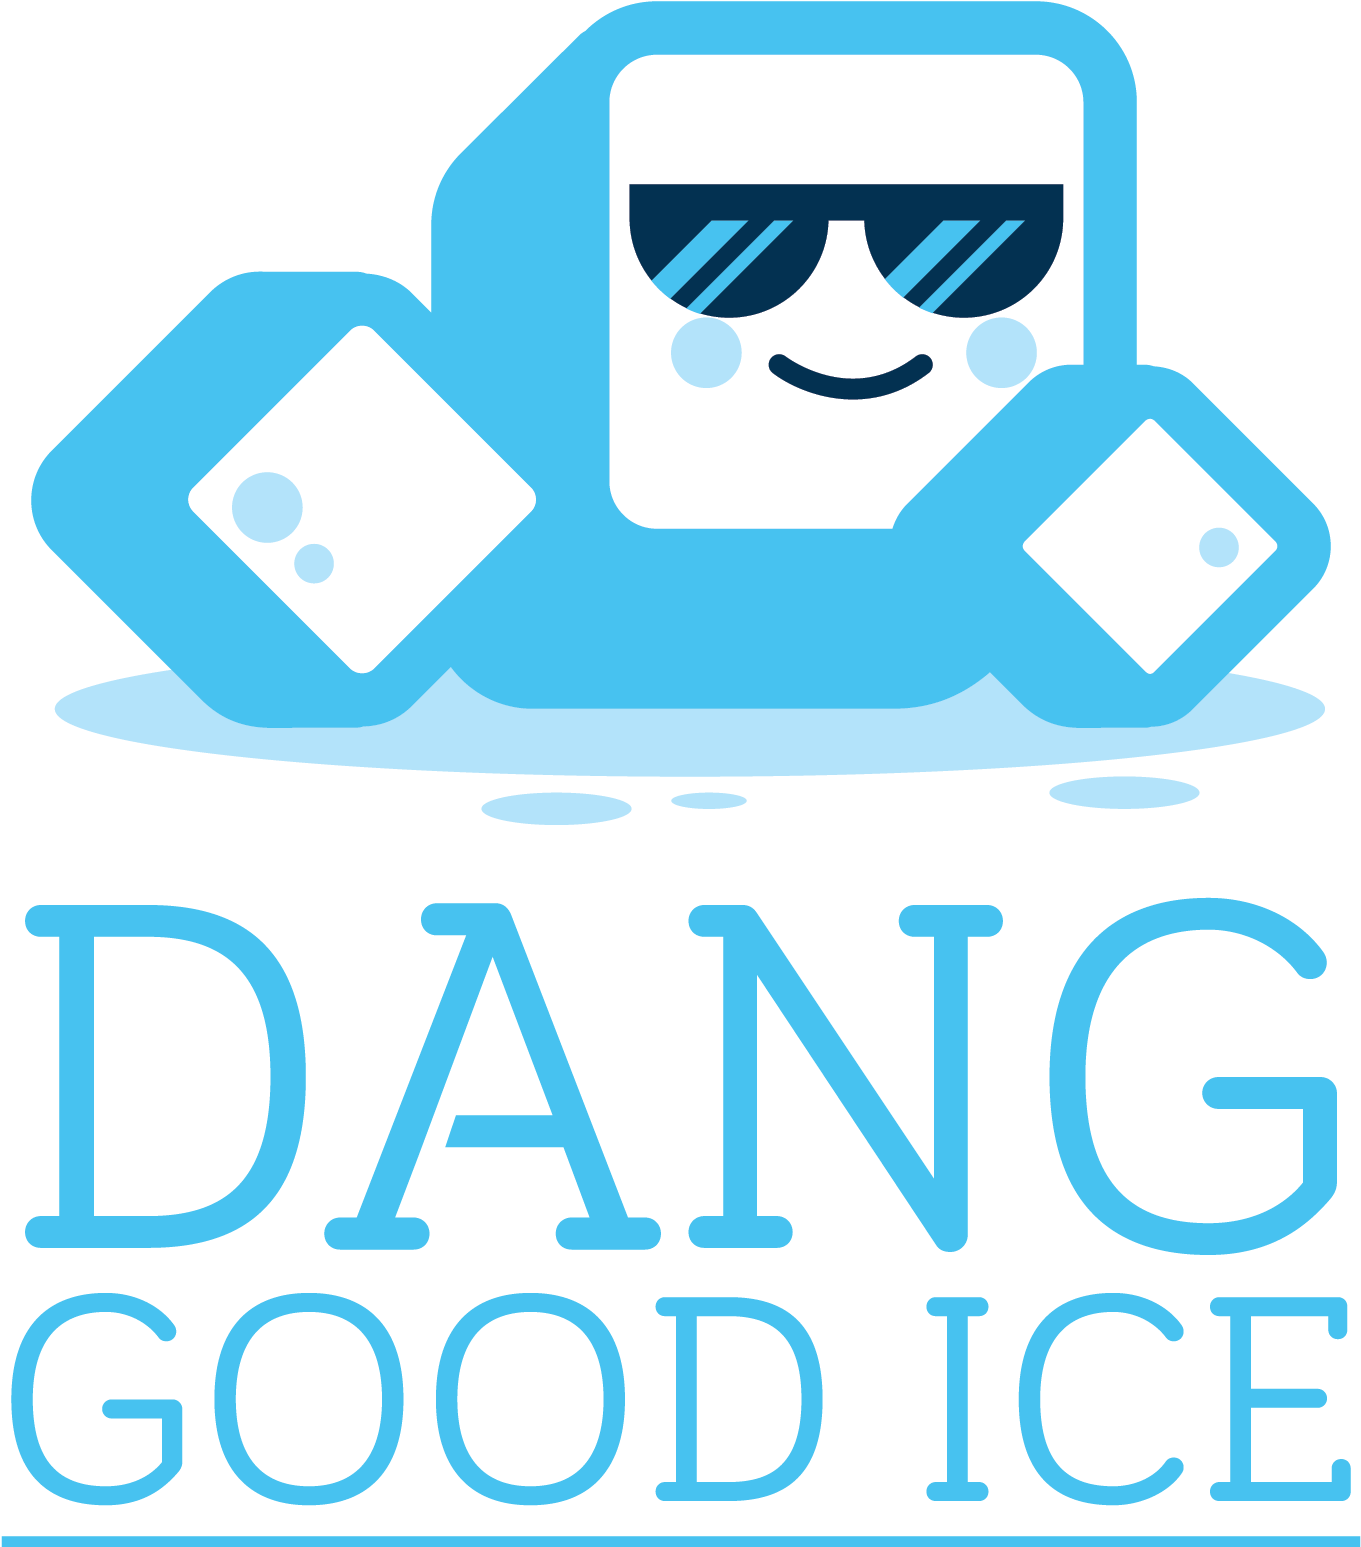 Dang Good Ice - Dang Good Ice (1688x1688)